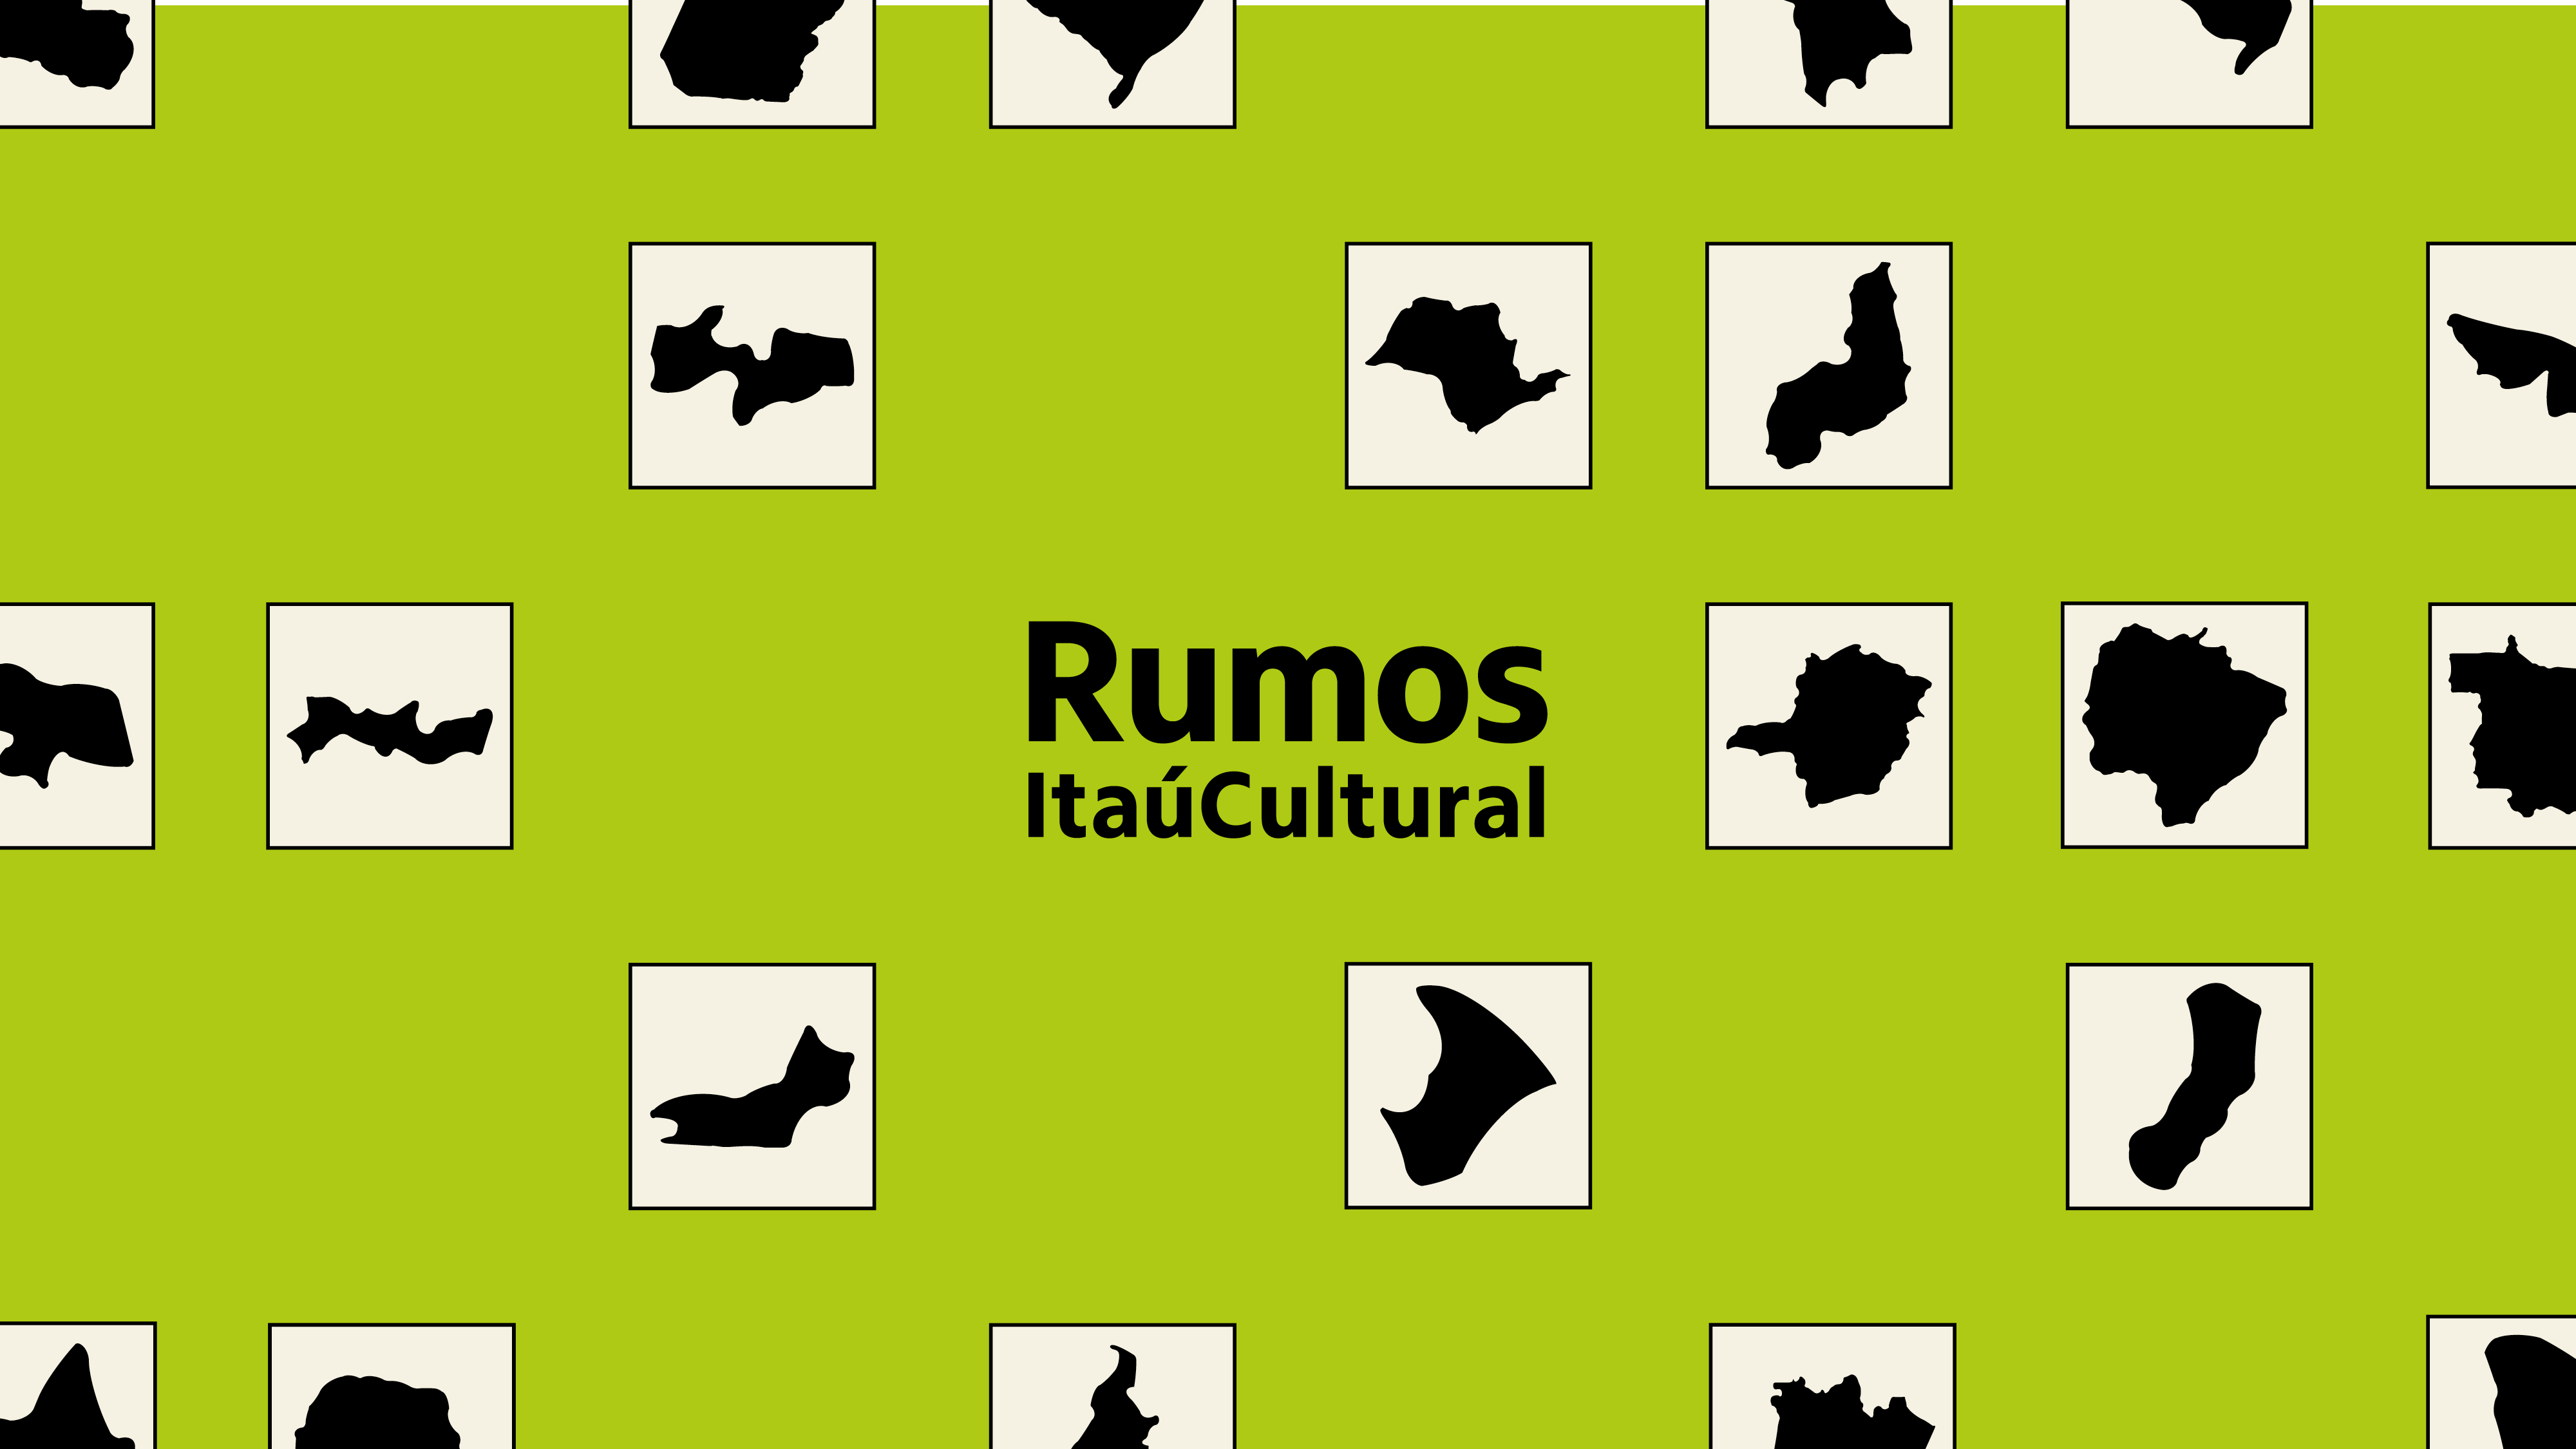 Edital Rumos, do Itaú Cultural, divulga resultado